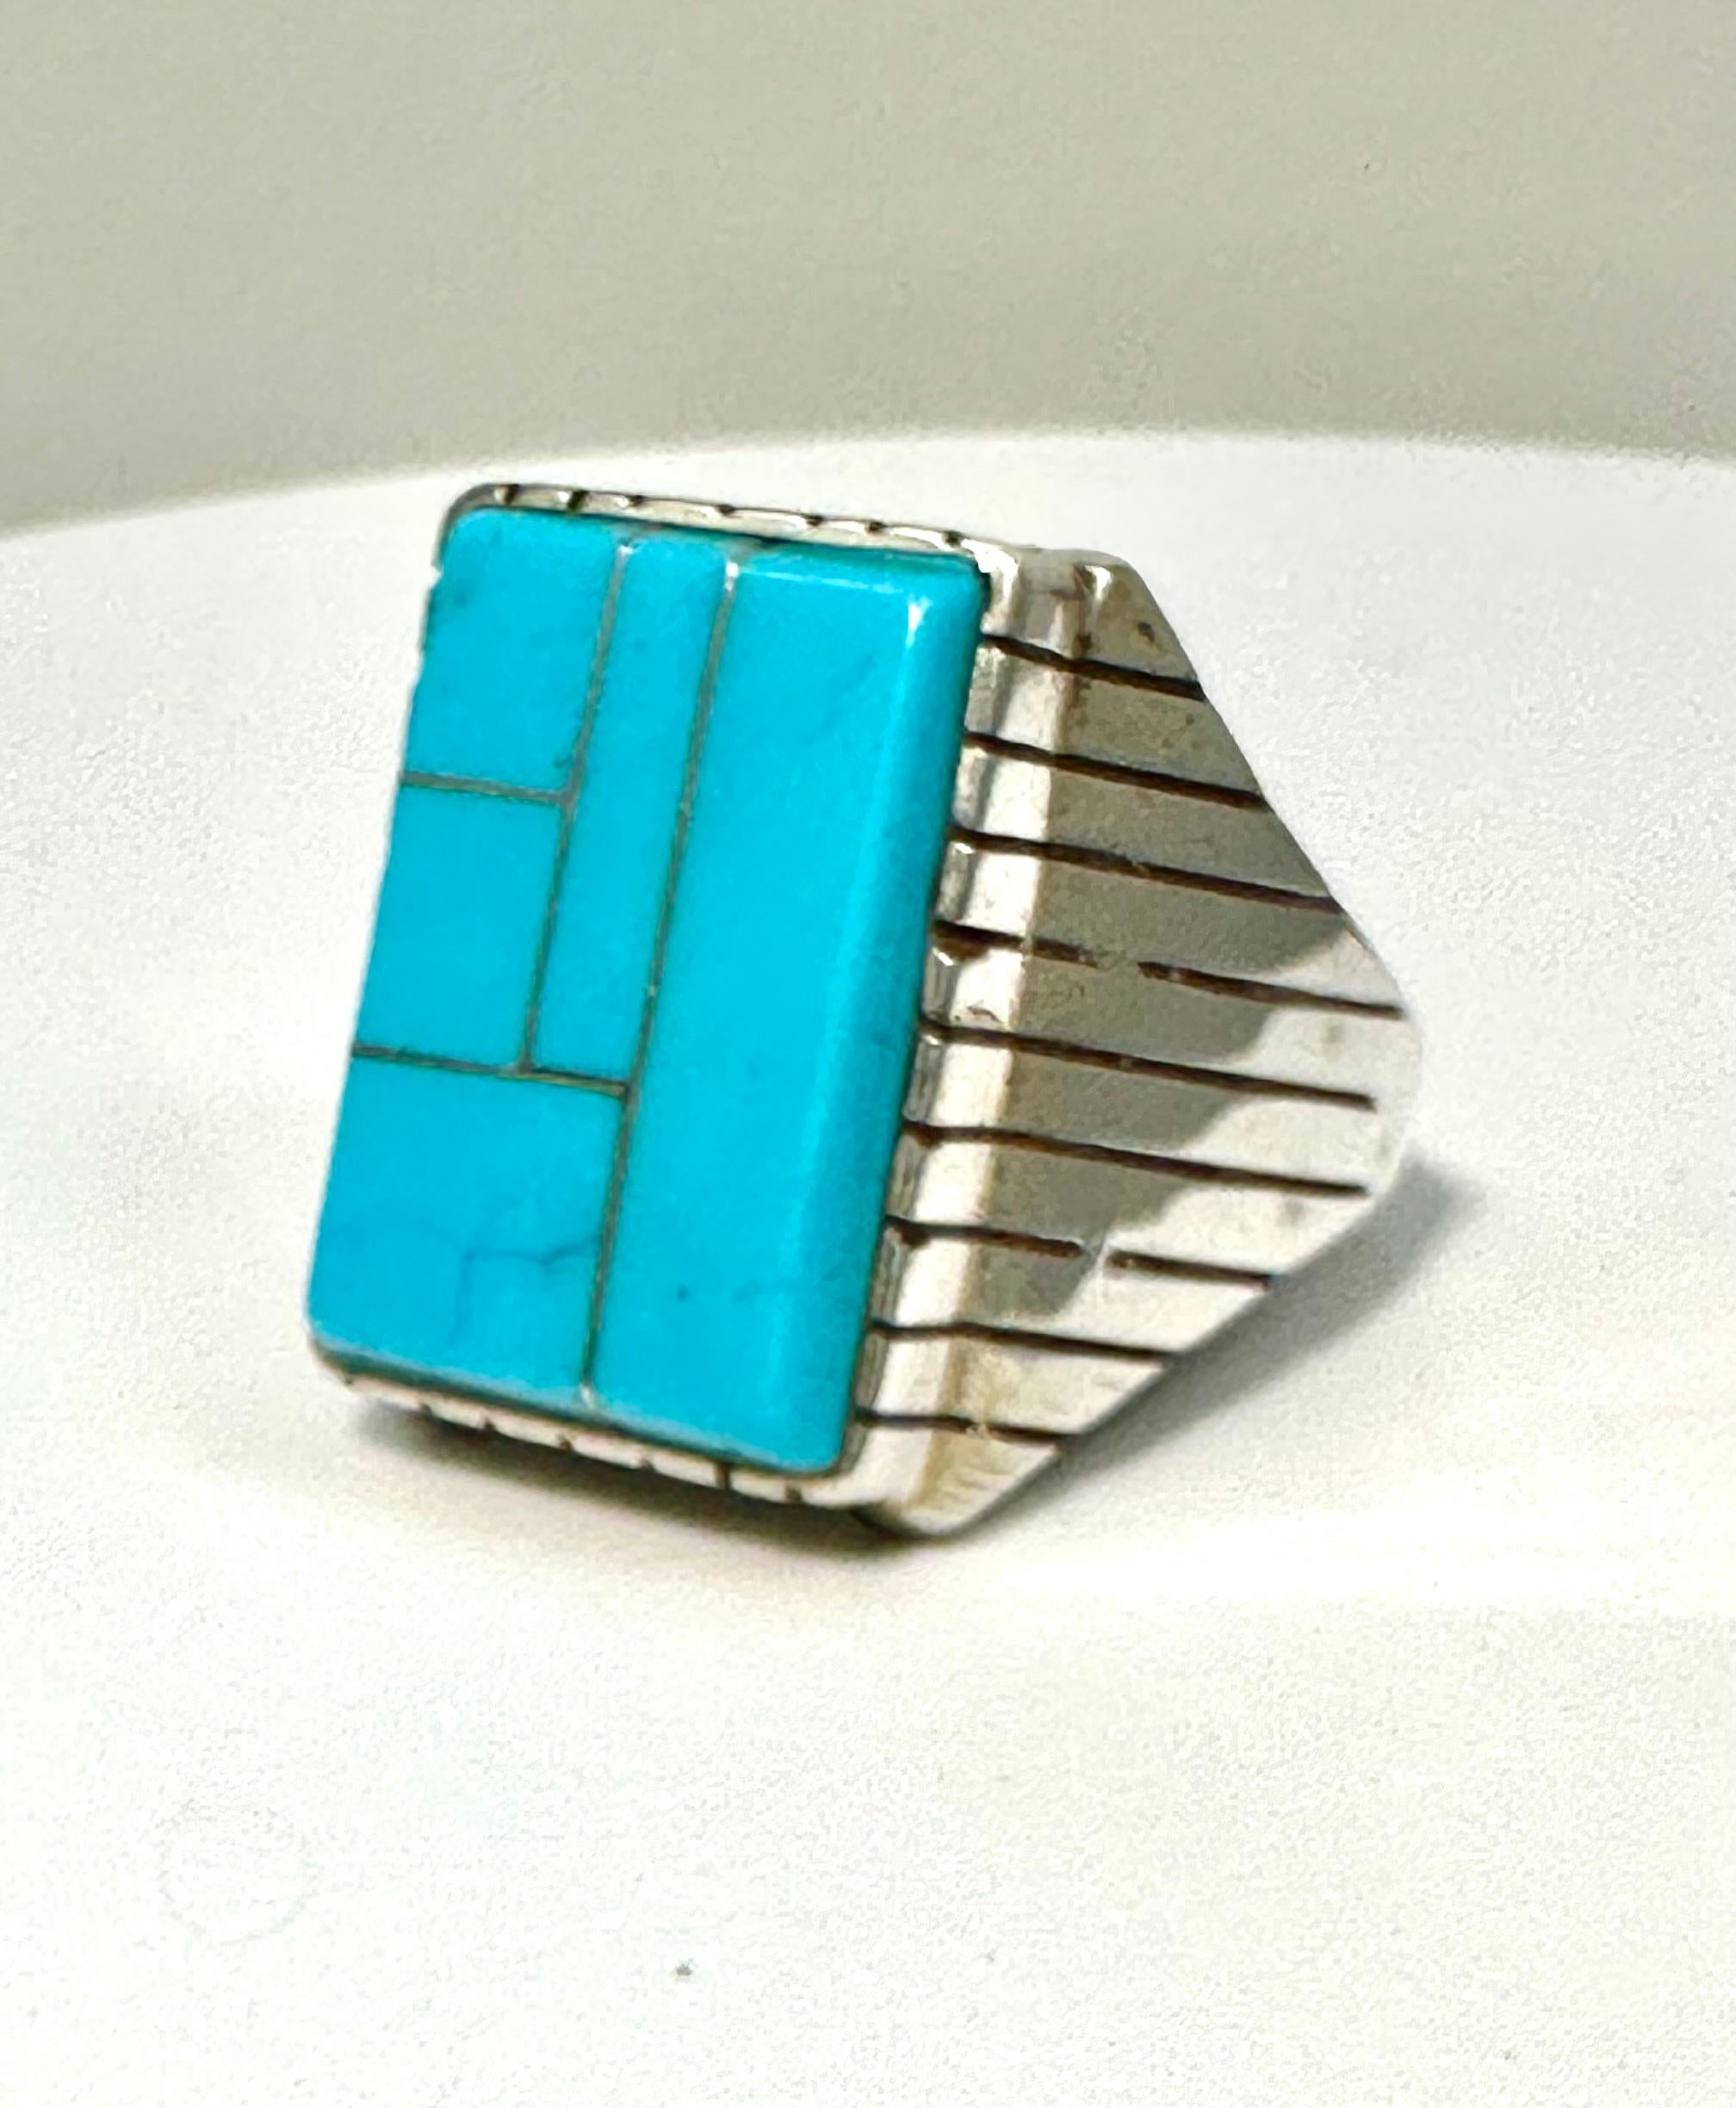 Navajo Sterling Silver .925 Kingman Turquoise 15 x 20mm Rectangle Ring Size 10.5

La turquoise, un mélange de bleu et de vert, présente les mêmes caractéristiques de fraîcheur et d'apaisement. La couleur turquoise est associée à des significations